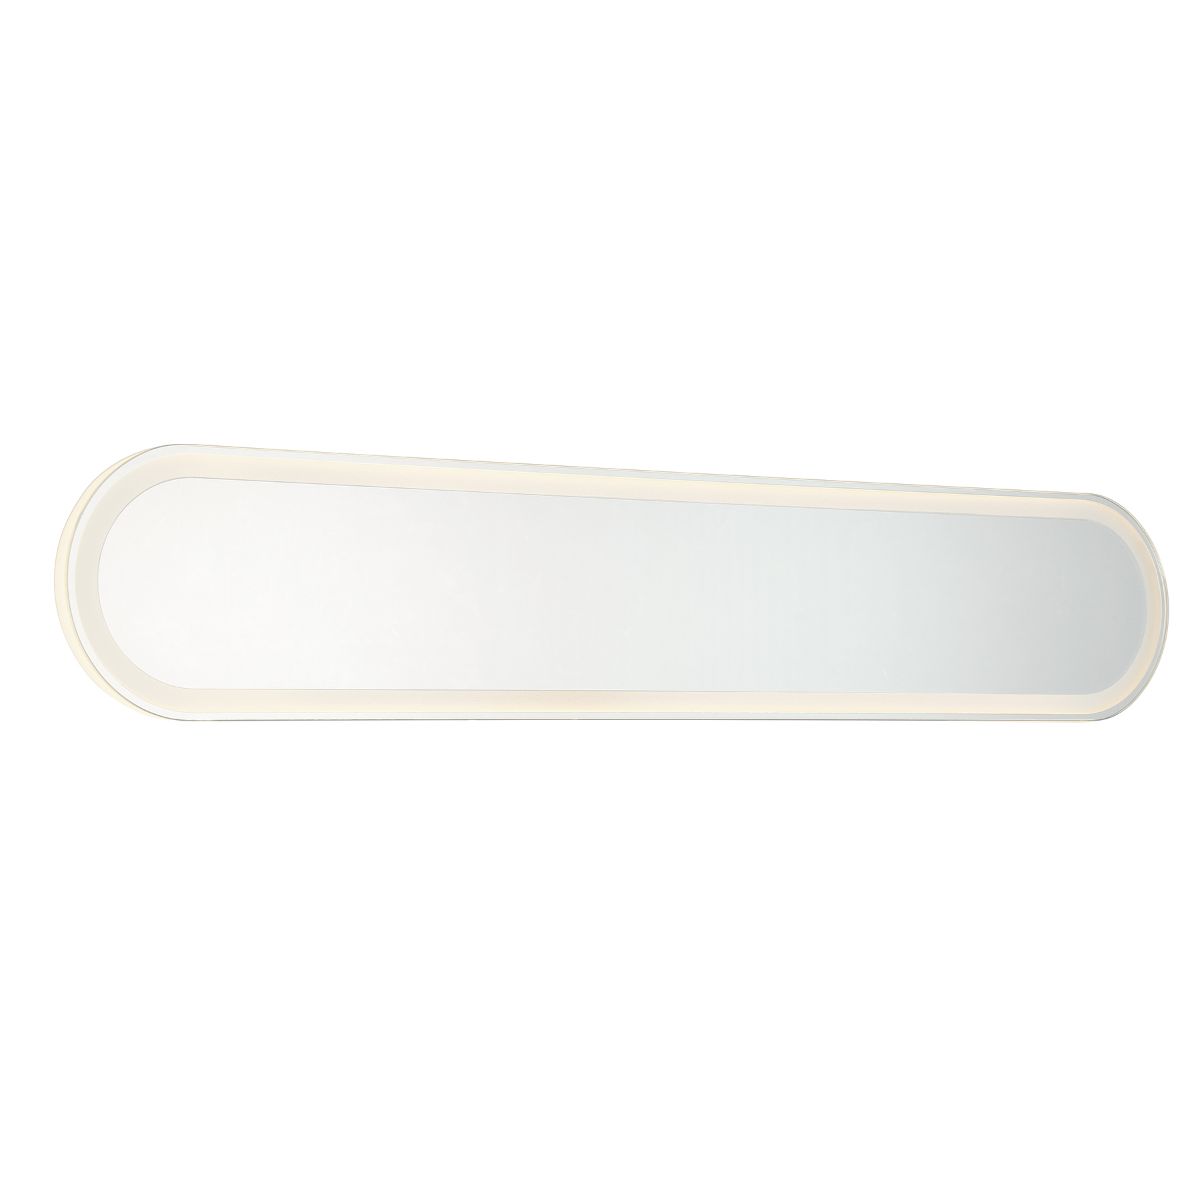 36 In. X 6.75 In. LED Vanity & Bathroom Mirror